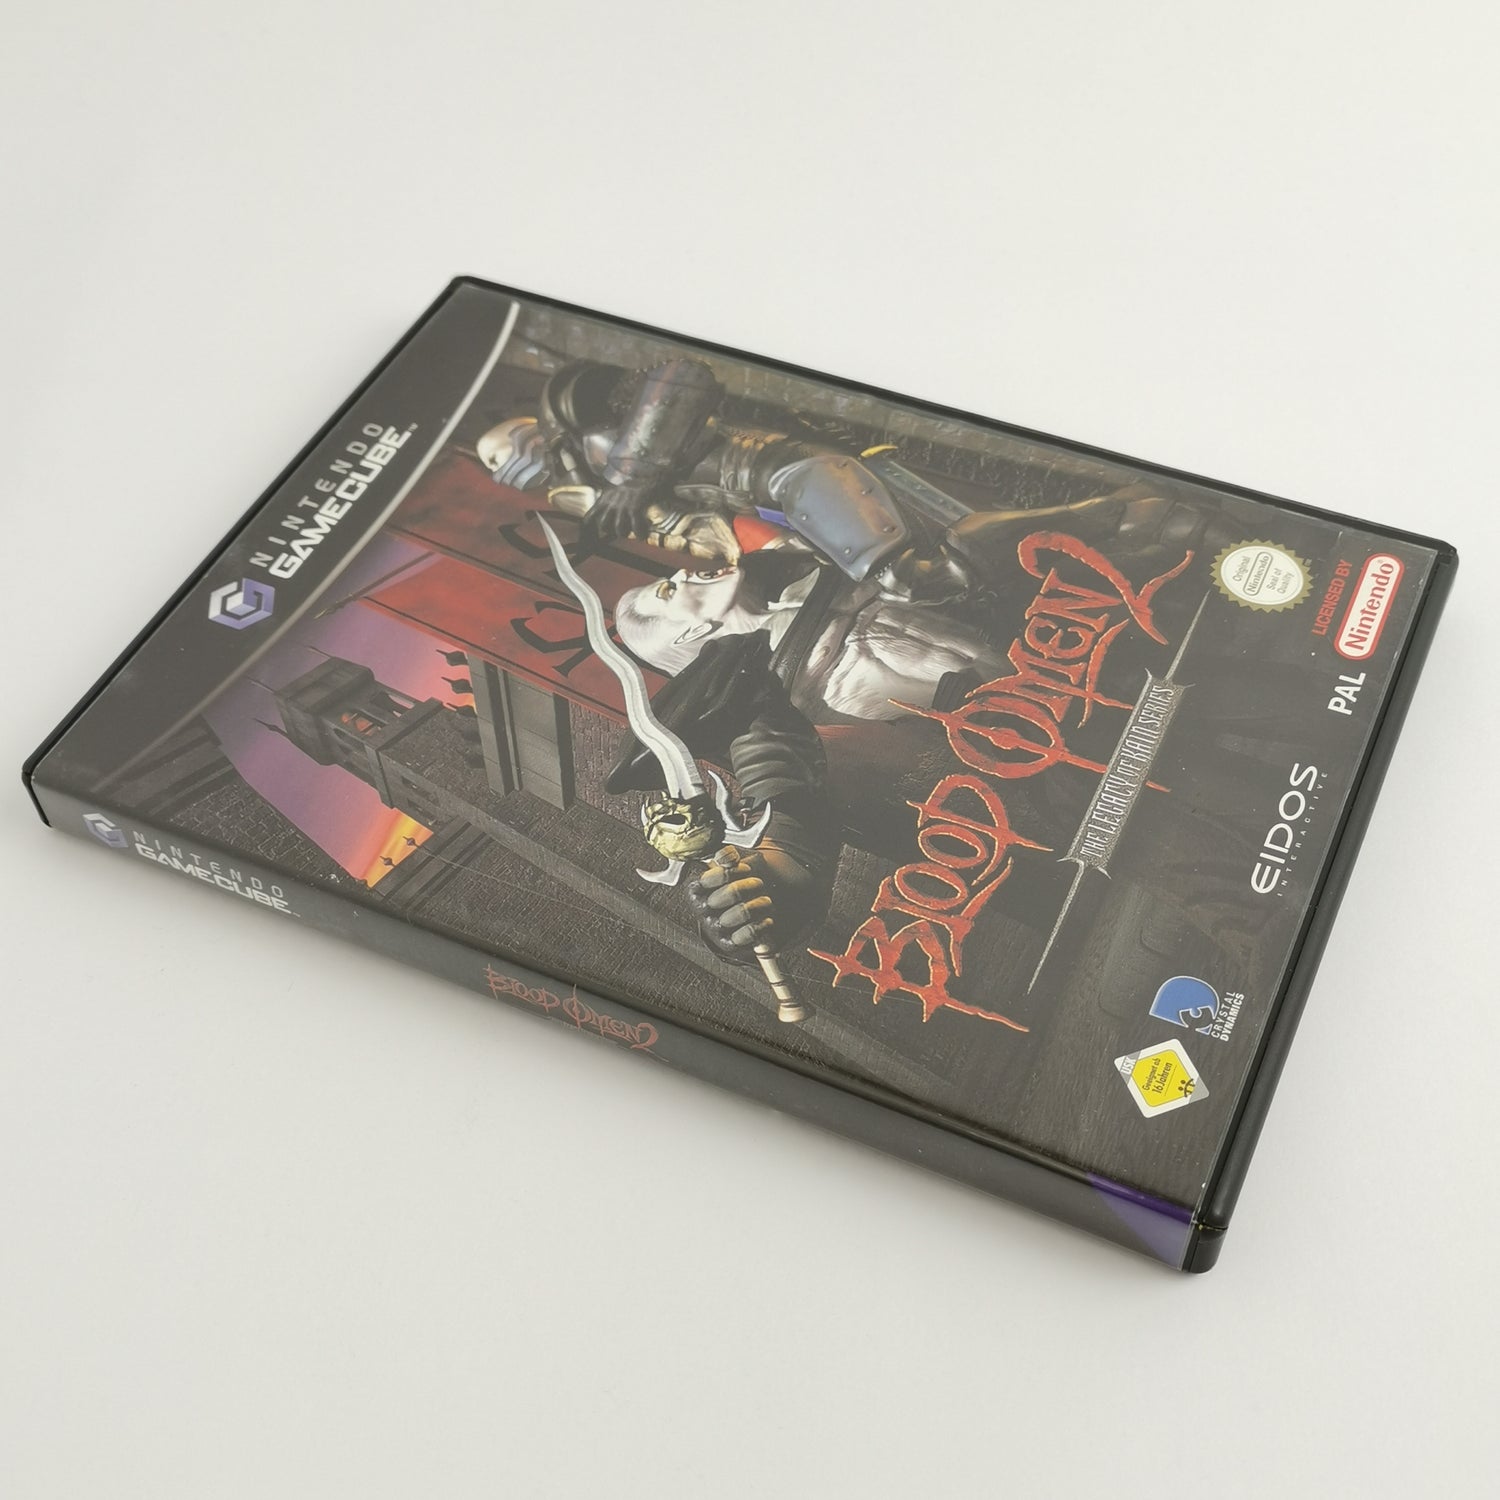 Nintendo Gamecube Game: Blood Omen 2 - Legacy of Kain Series | Original packaging PAL version